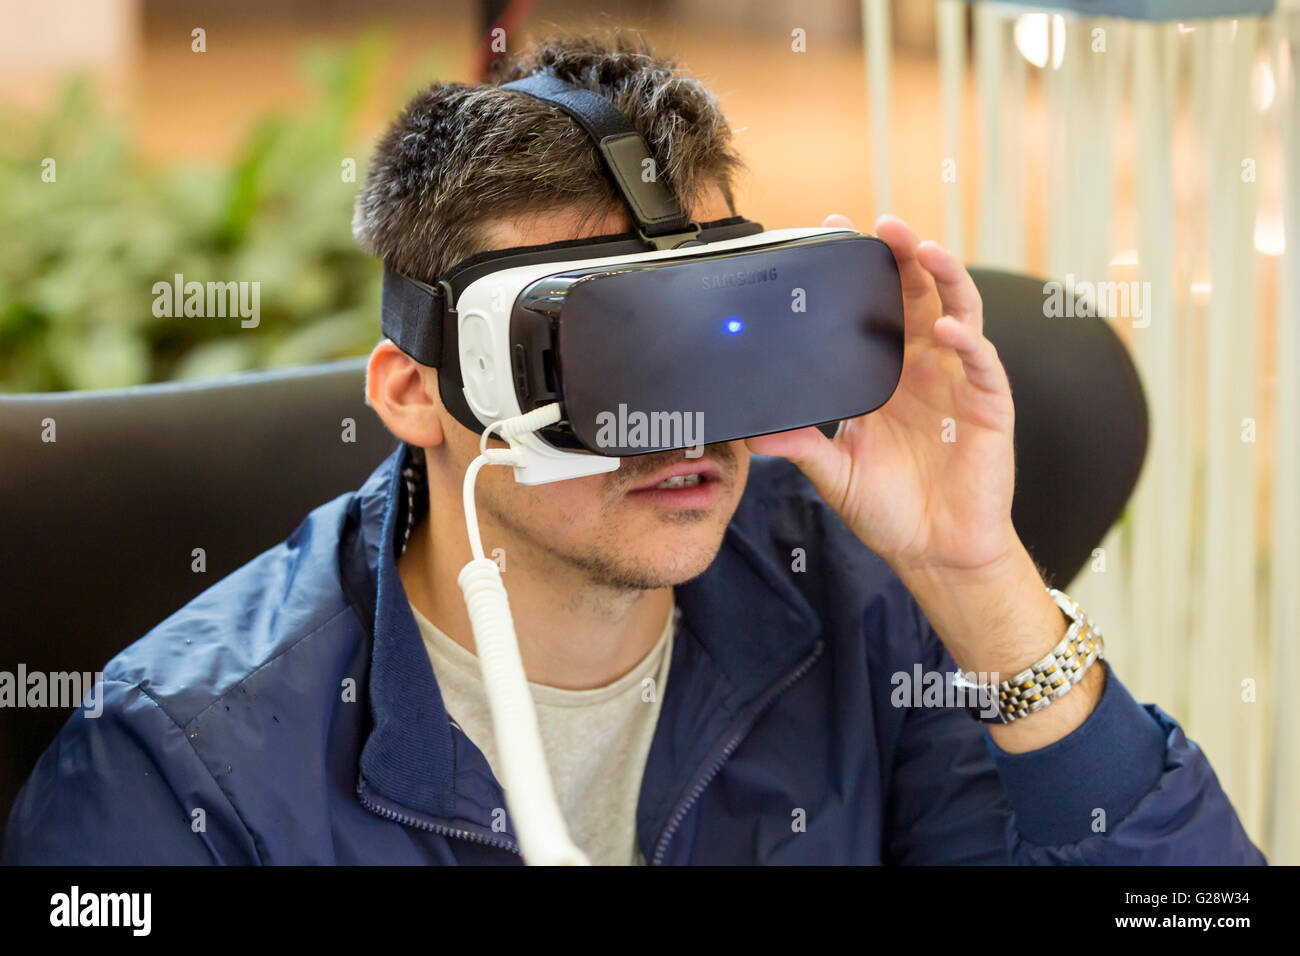 Sofia, Bulgarie - 13 mai 2016 : un homme fait l'expérience de réalité virtuelle (RV) un casque (lunettes) rig sur sa tête pendant un e Banque D'Images